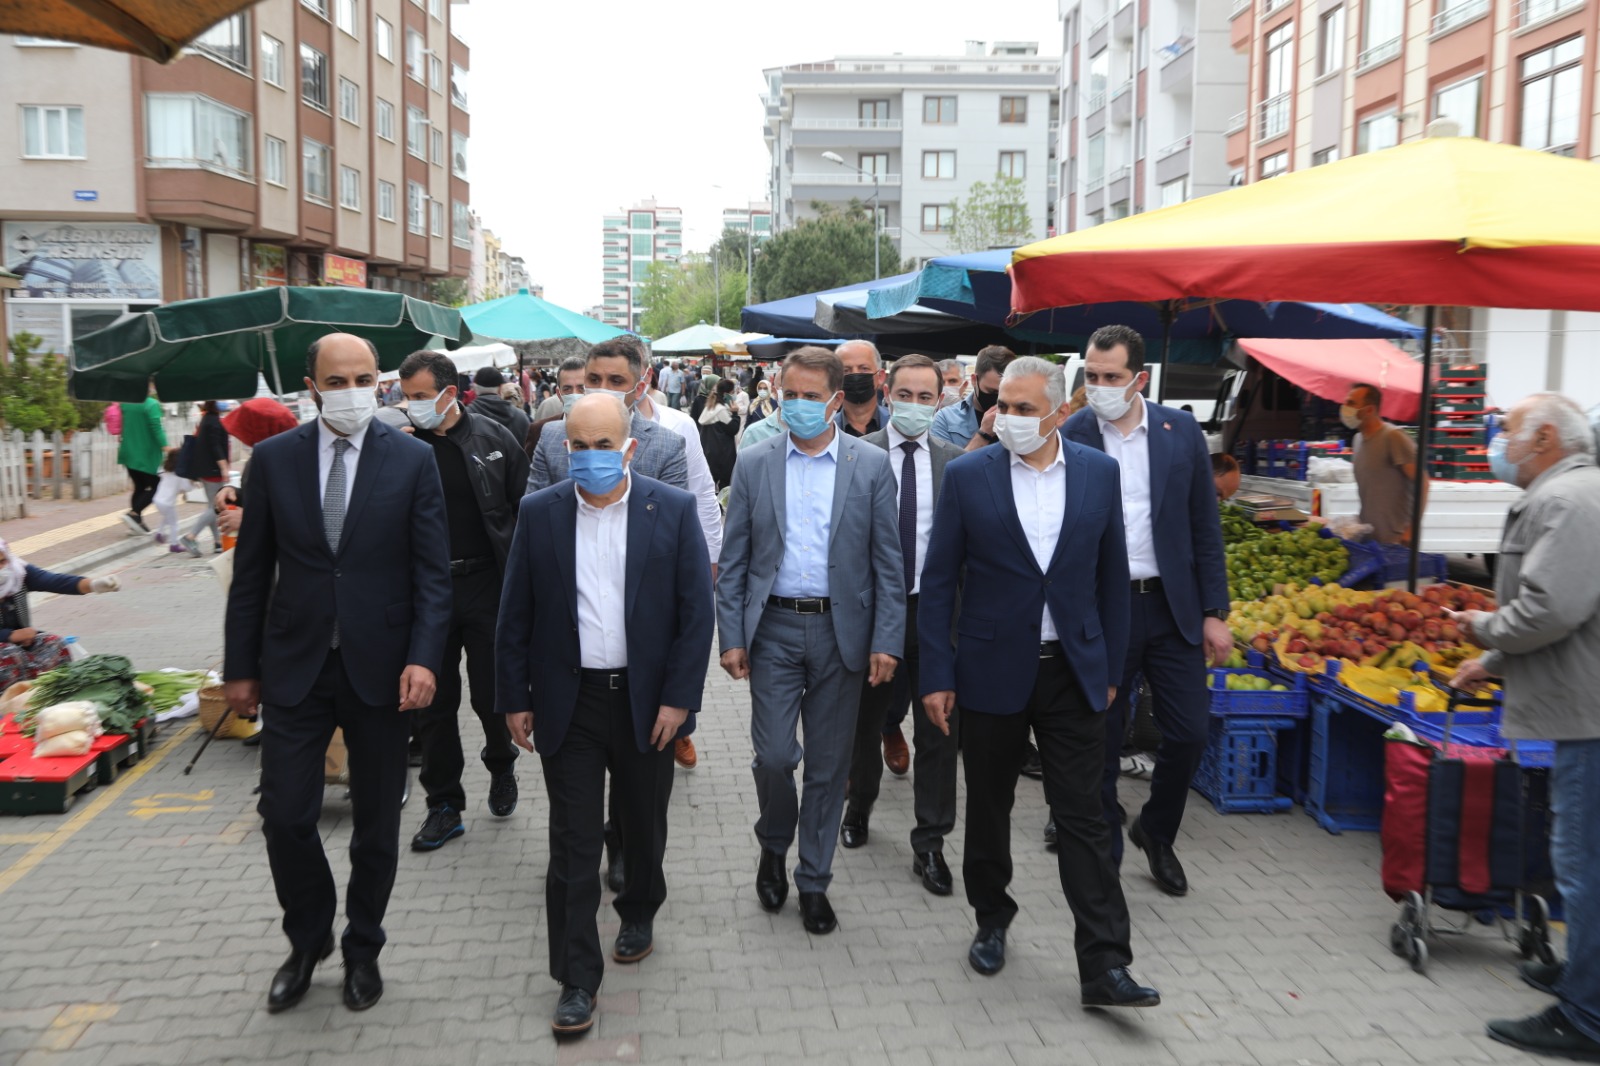 Samsun'da pazar yerlerinde sıkı önlem